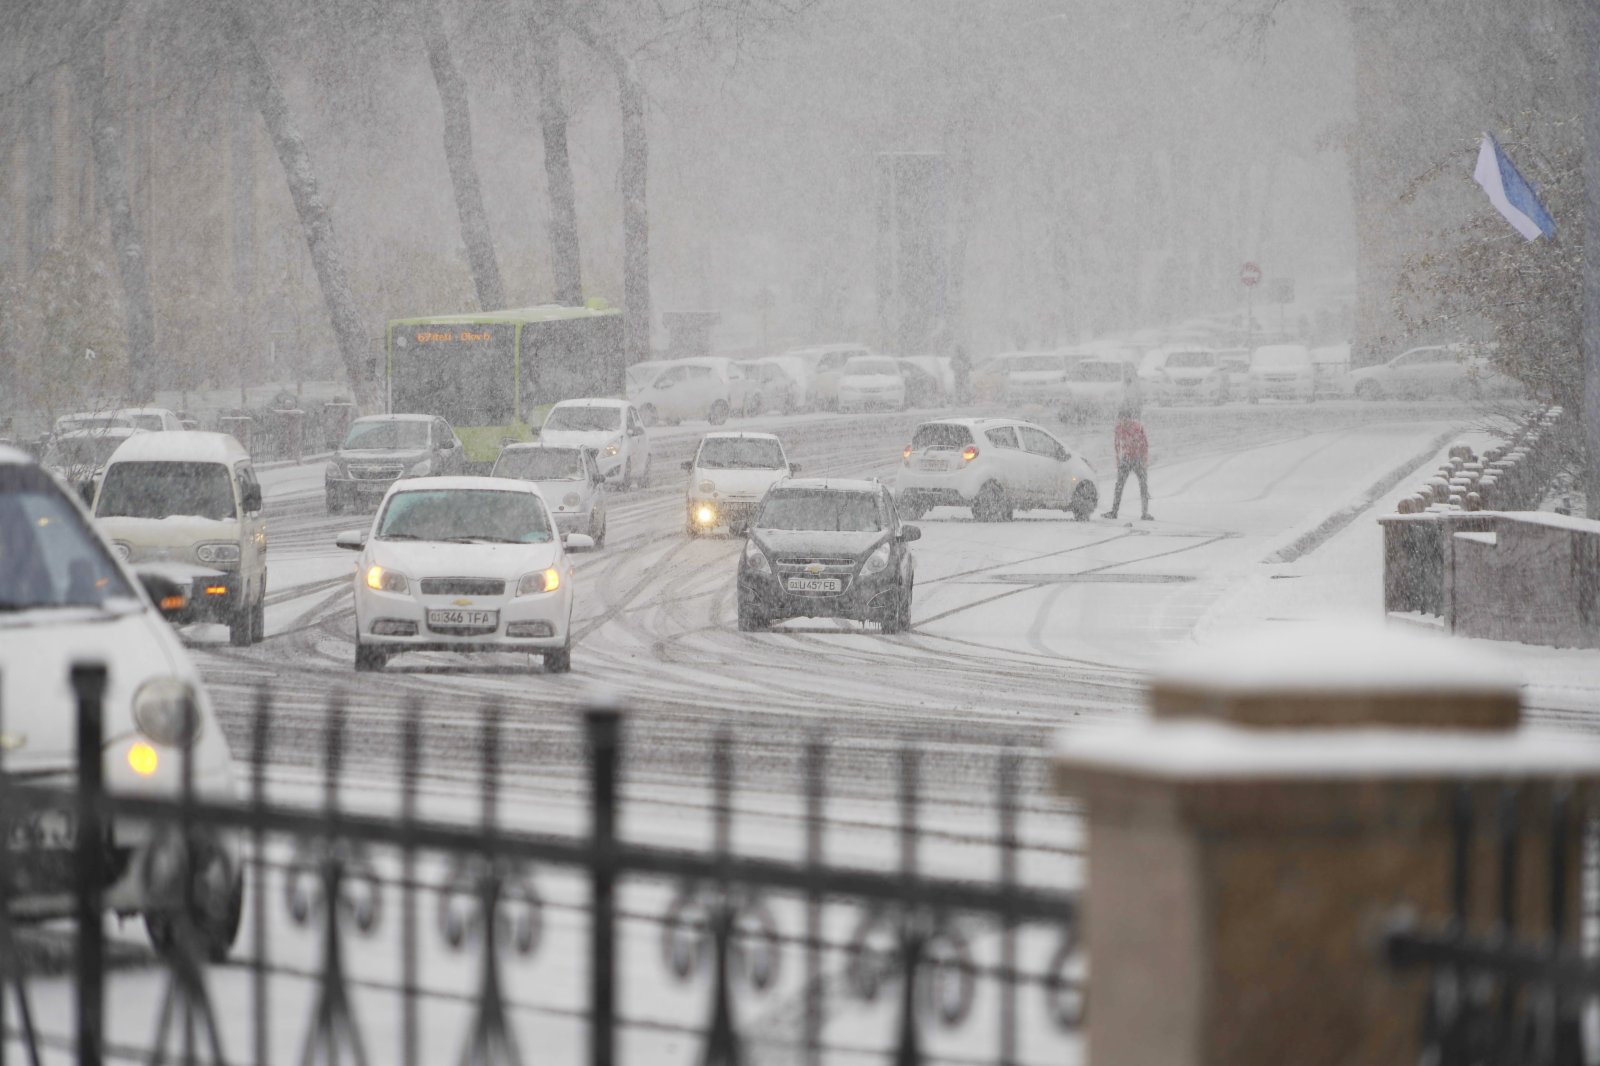 這是11月18日在烏茲別克斯坦首都塔什干拍攝的雪景。當日，受寒流南下影響，烏茲別克斯坦首都塔什干市區迎來今冬首場降雪。(新華社)